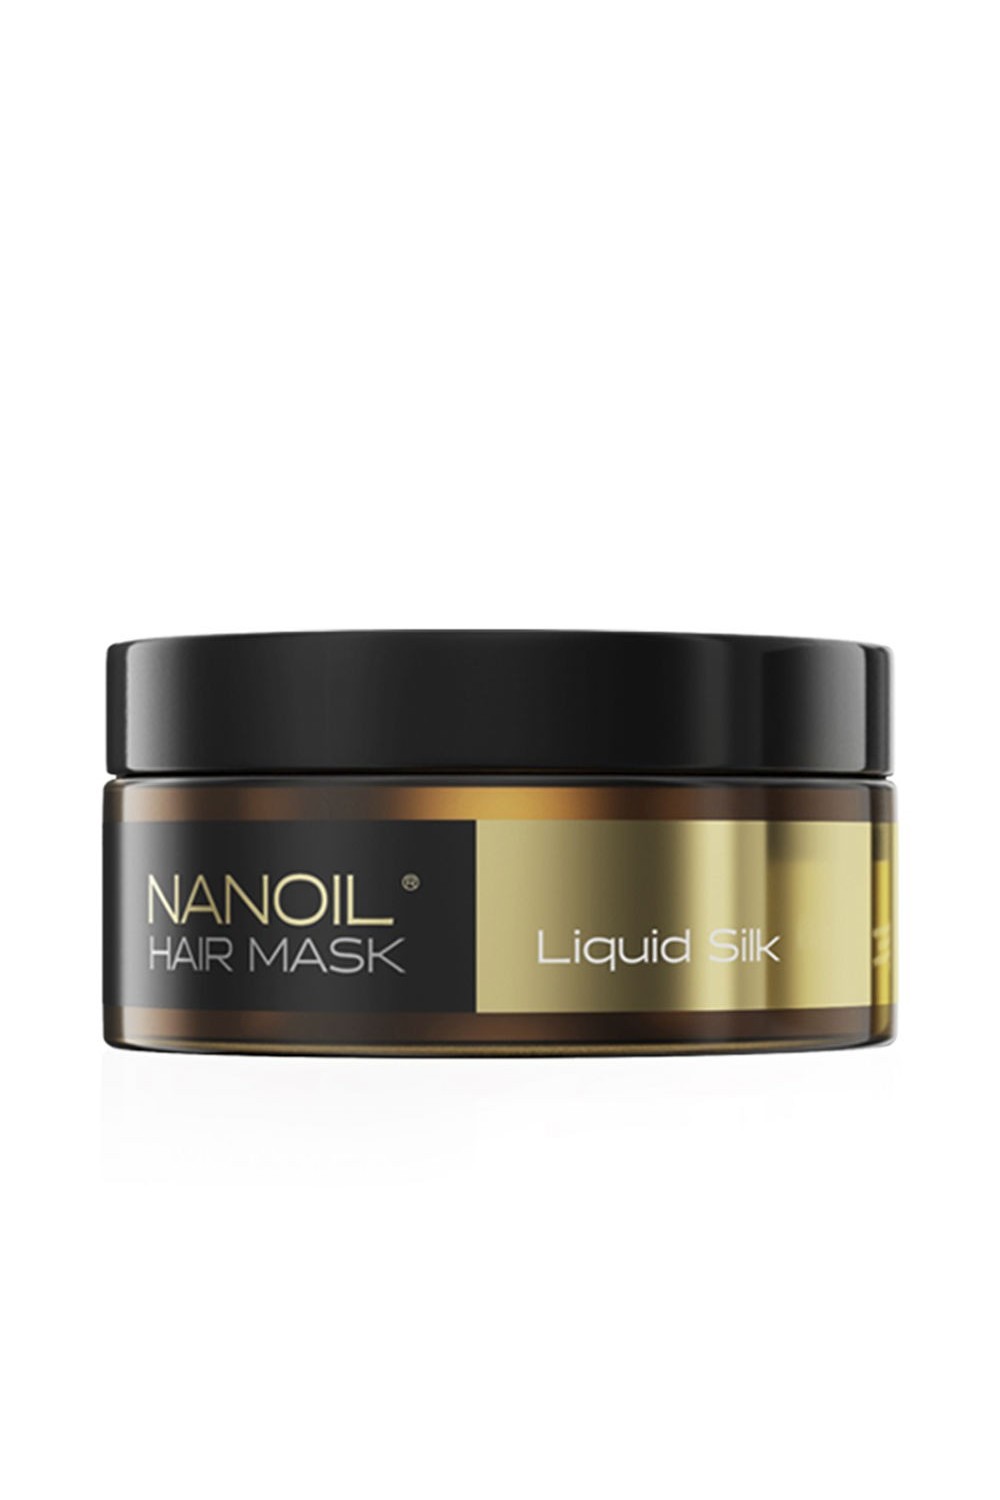 Nanolash Hair Mask Liquid Silk 300ml